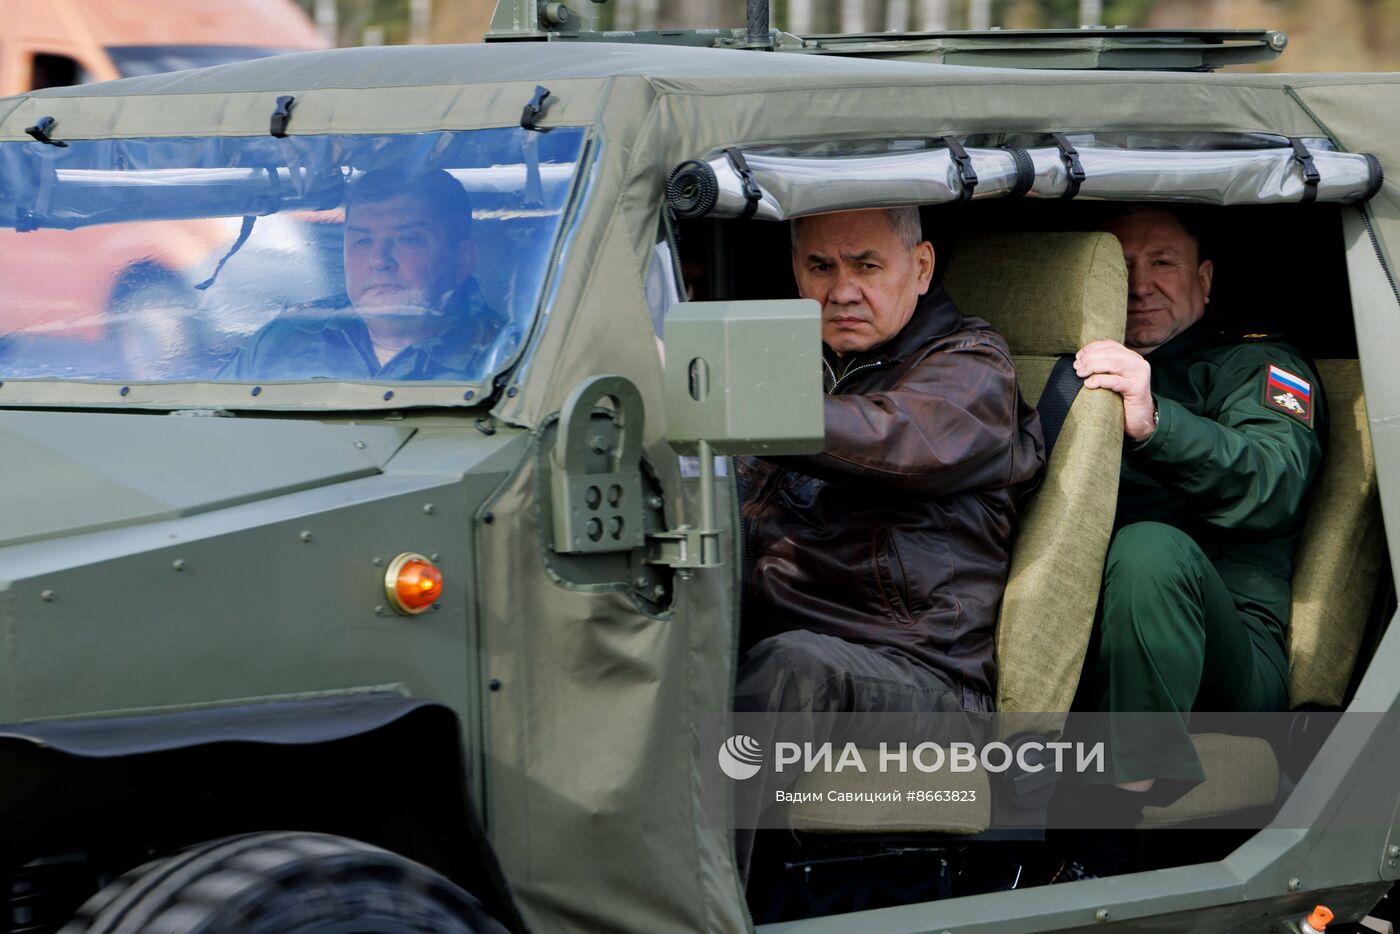 Министру обороны РФ С. Шойгу представили перспективные образцы военной техники